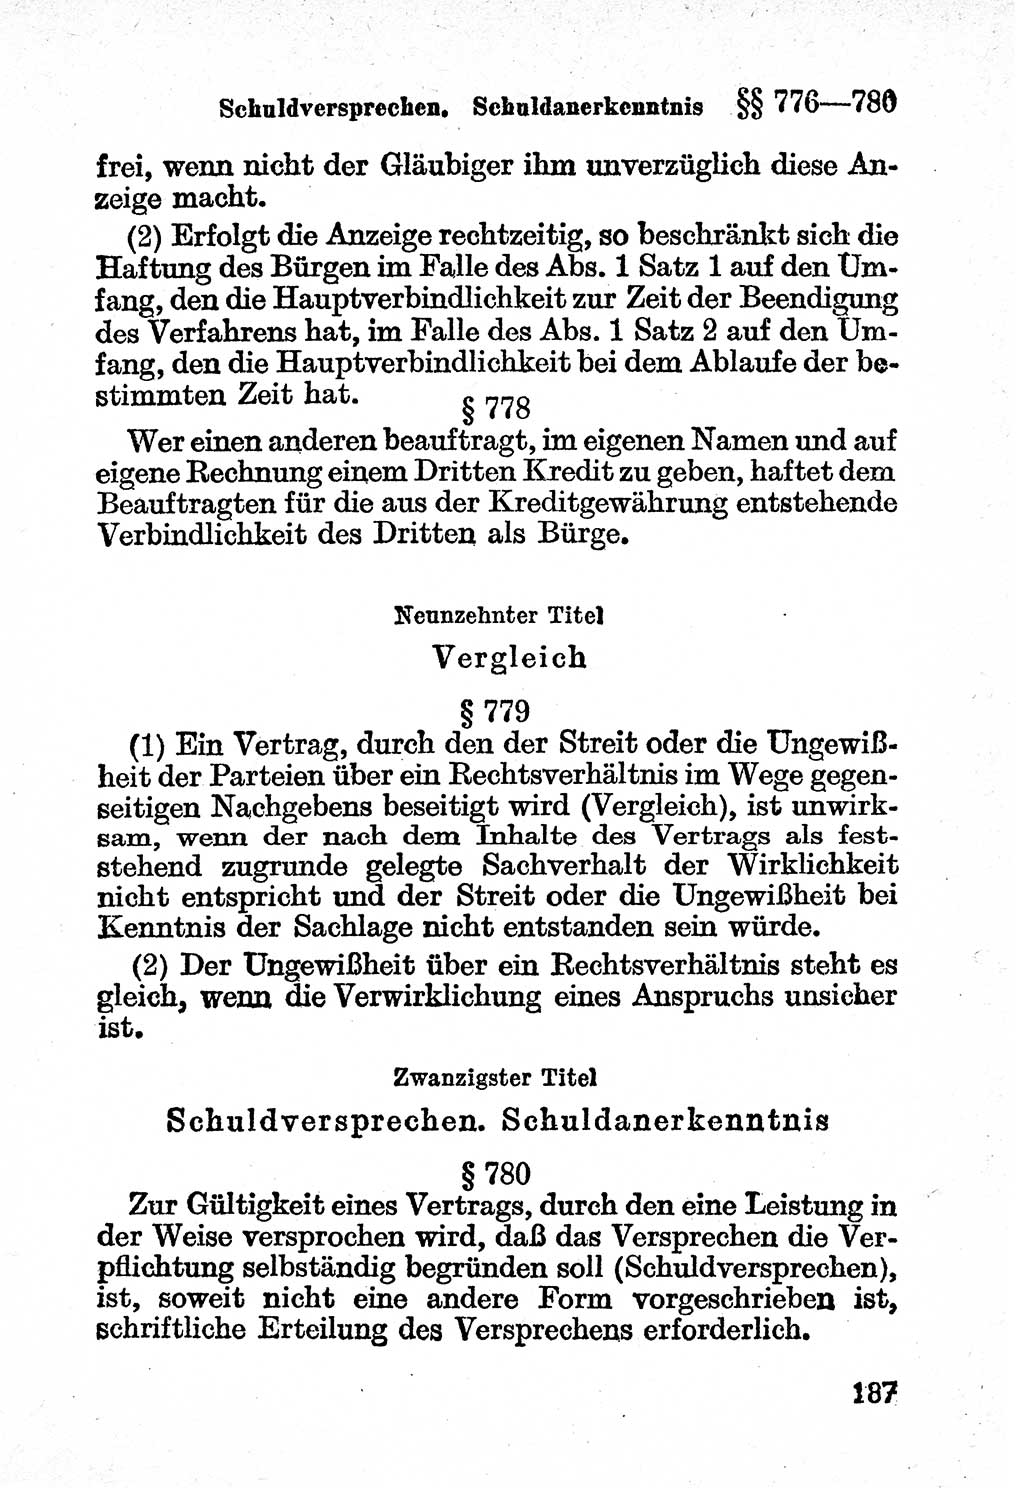 Bürgerliches Gesetzbuch (BGB) nebst wichtigen Nebengesetzen [Deutsche Demokratische Republik (DDR)] 1956, Seite 187 (BGB Nebenges. DDR 1956, S. 187)